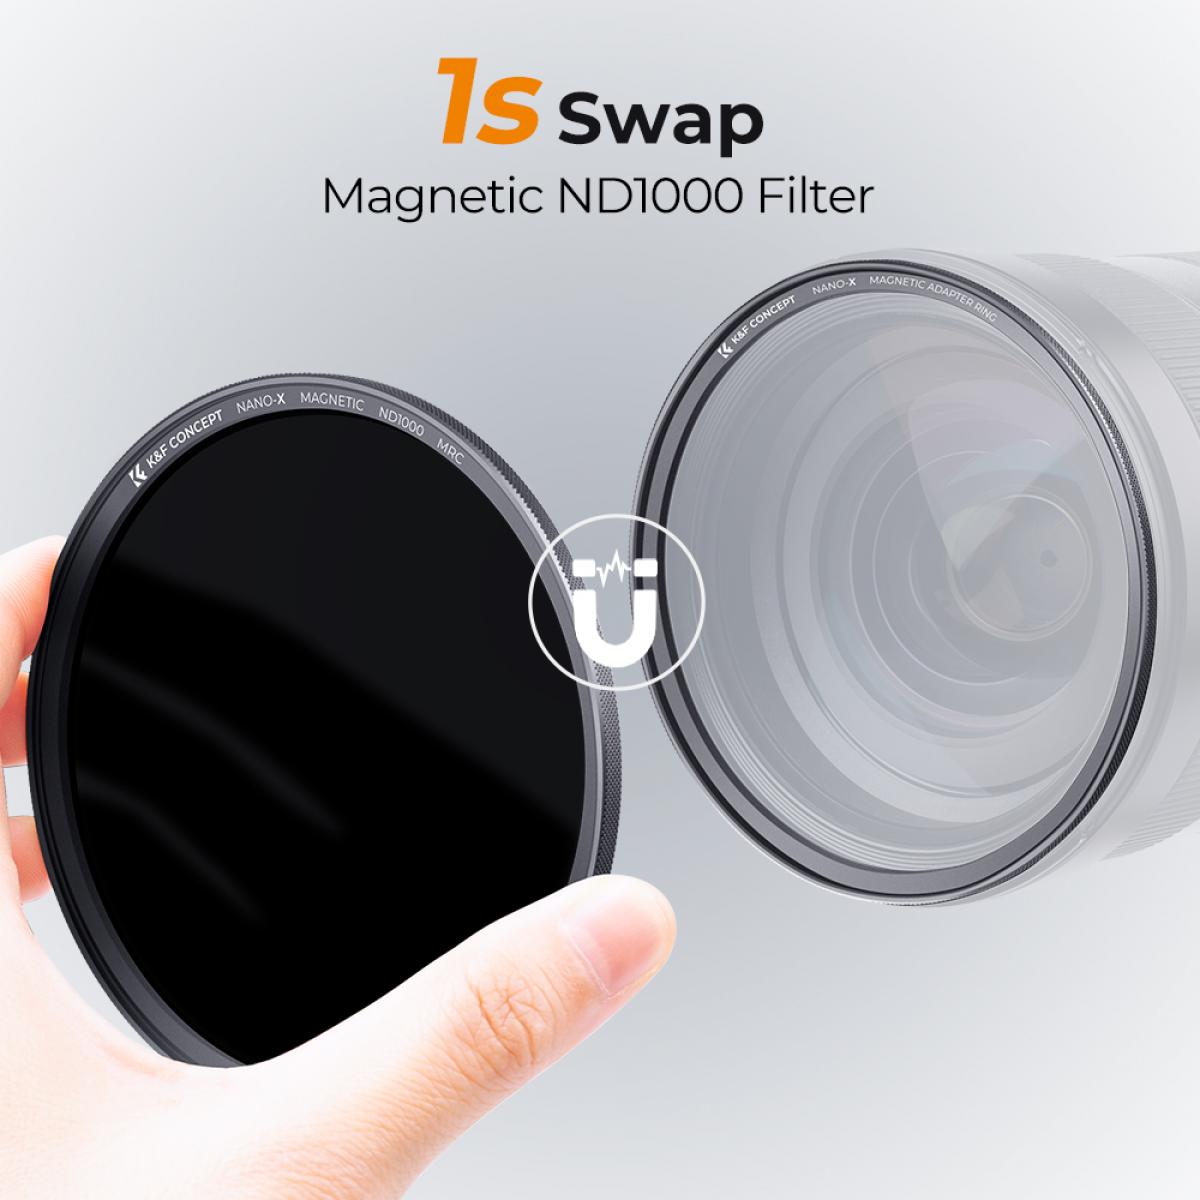 磁気ND1000フィルター 82MM NANO-X 高解像度 防水 傷のつきにくい  反射防止グリーンフィルムでコーティング、磁気アタッチメントリングと磁気金属カバー付き